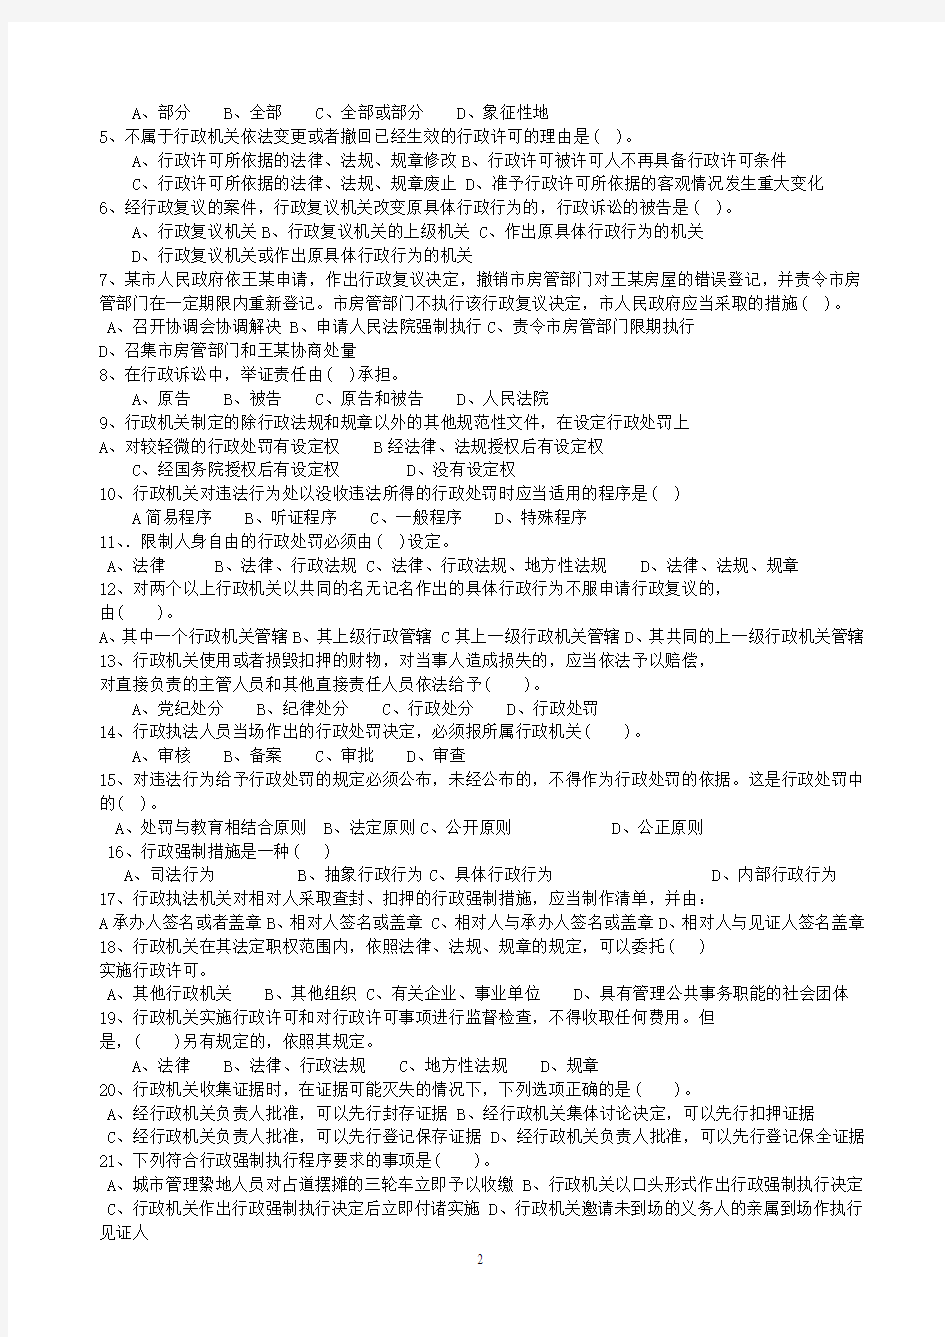 2013年福建省行政执法资格考试练习卷(综合法律知识)